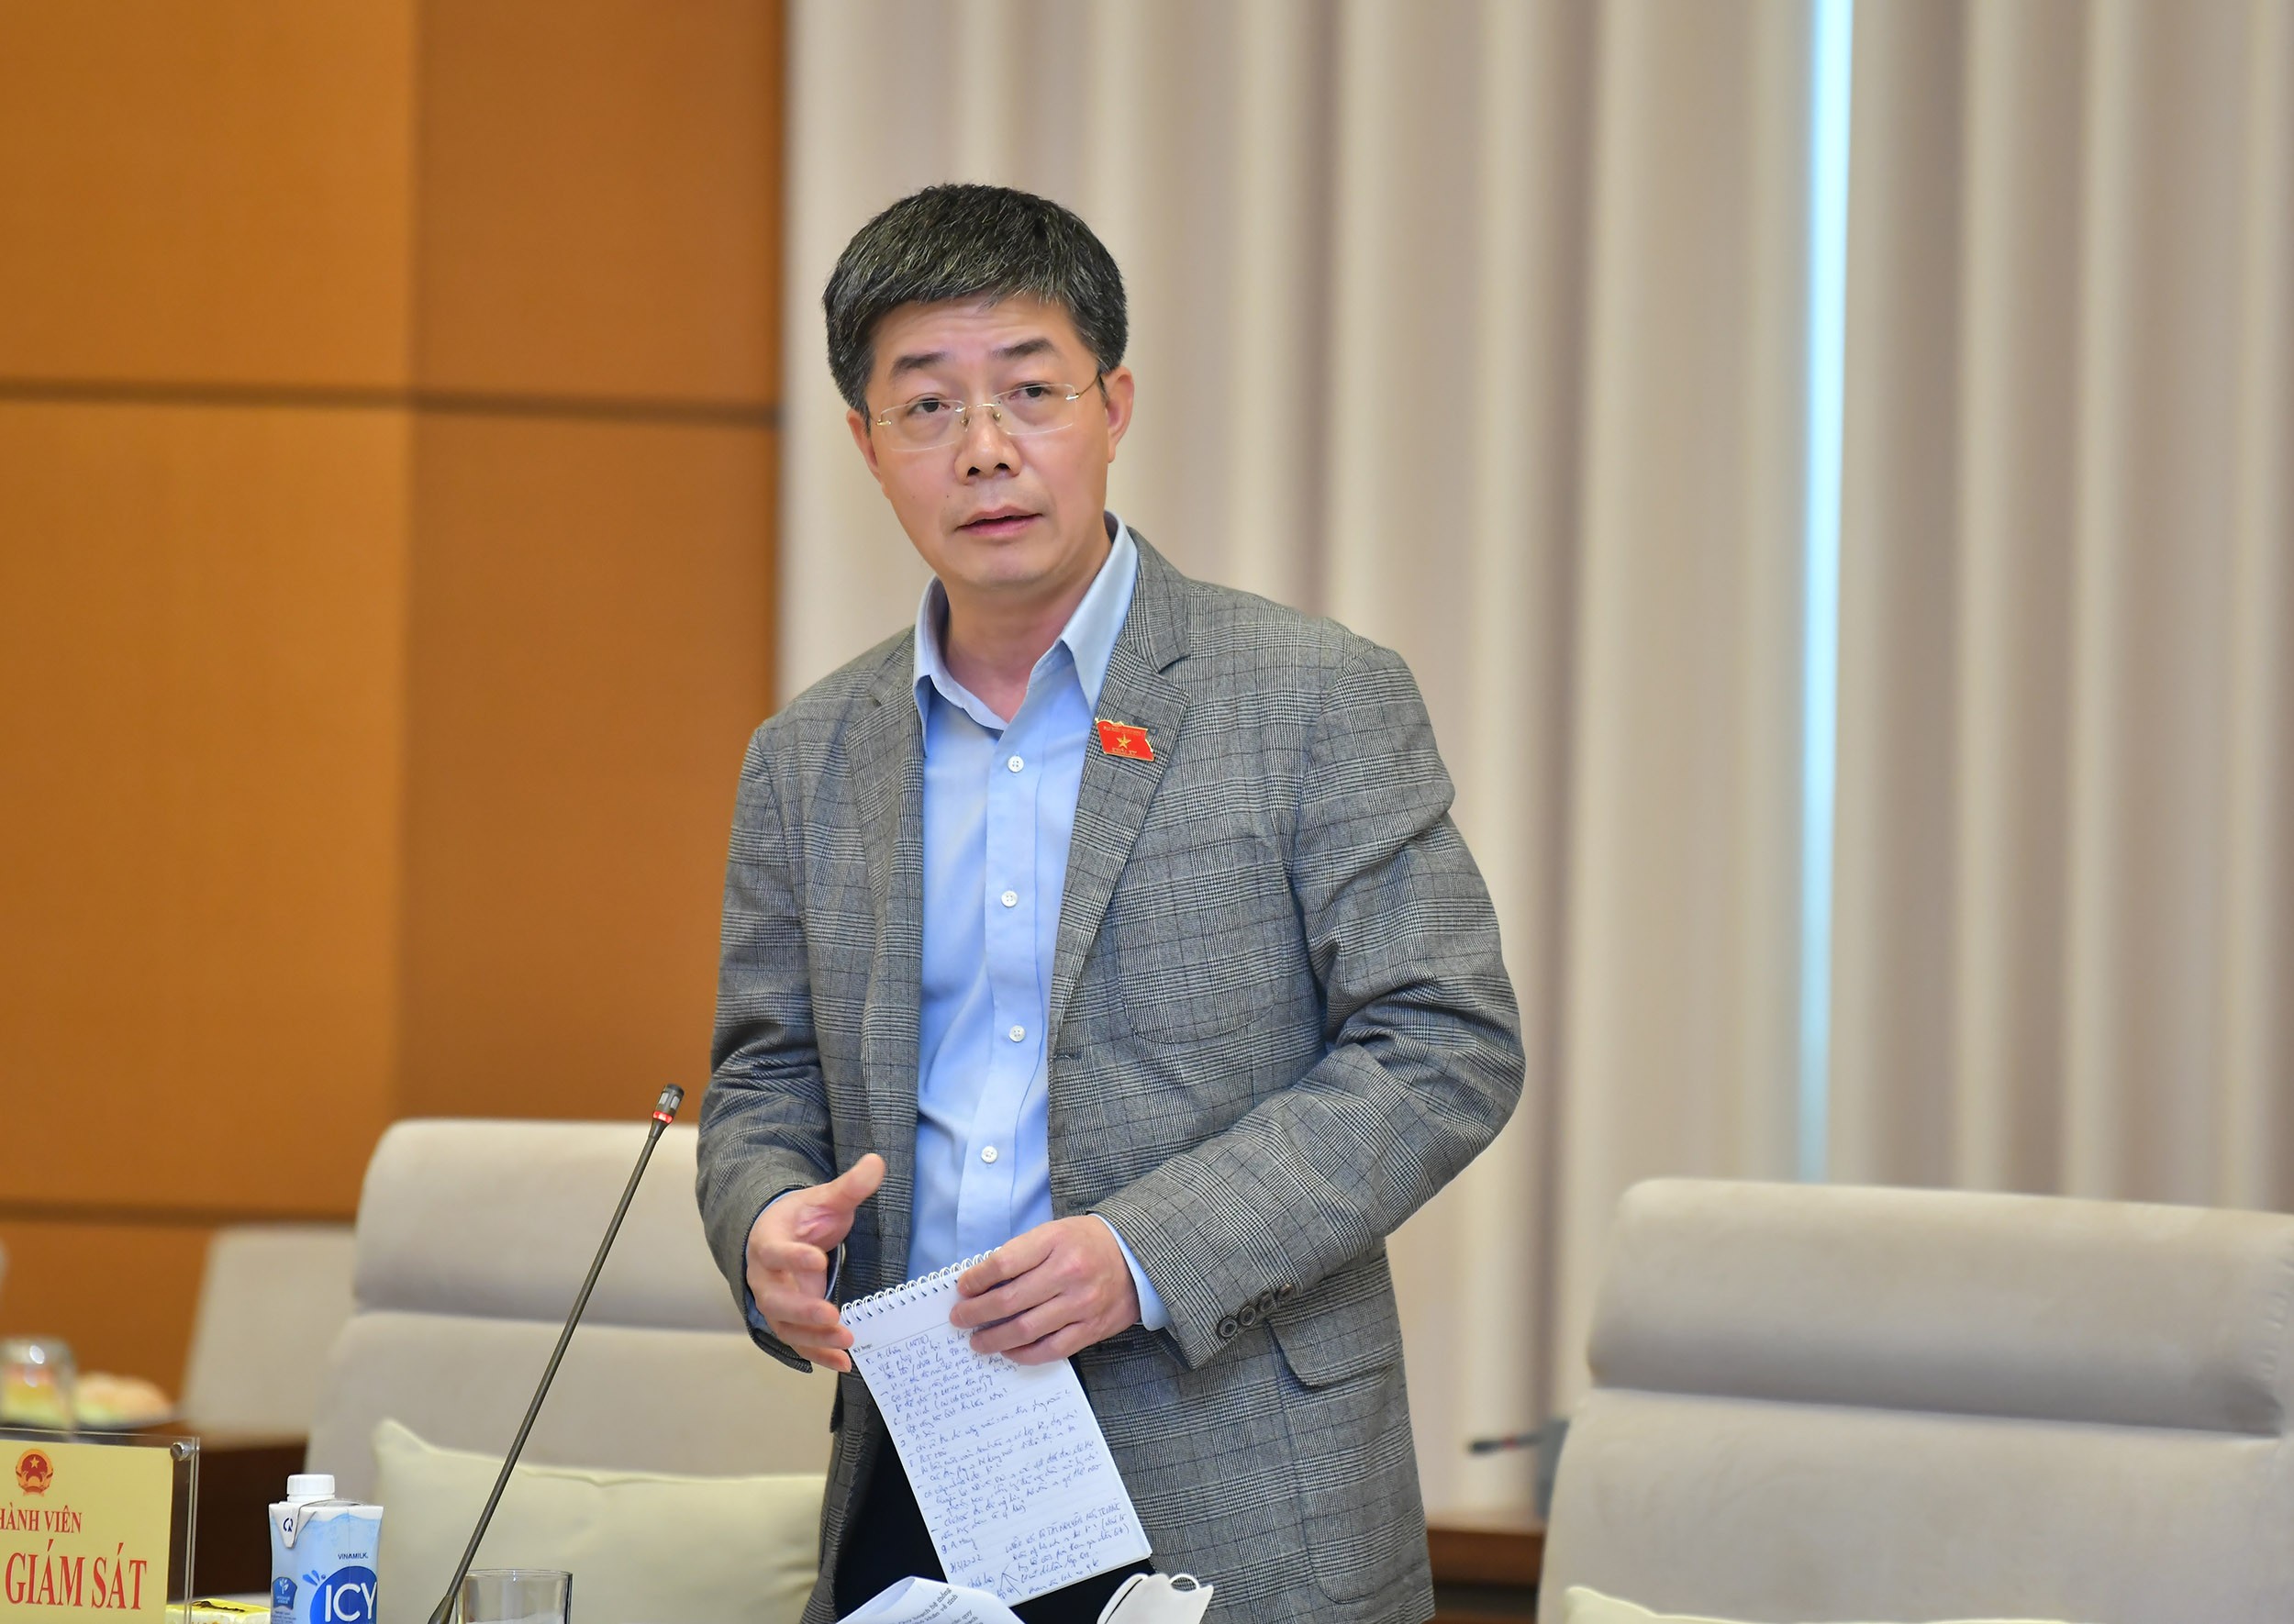 
Ông Nguyễn Mạnh Hùng (Đoàn đại biểu Quốc hội TP. Cần Thơ) - Ủy viên Ủy ban Kinh tế của Quốc hội
